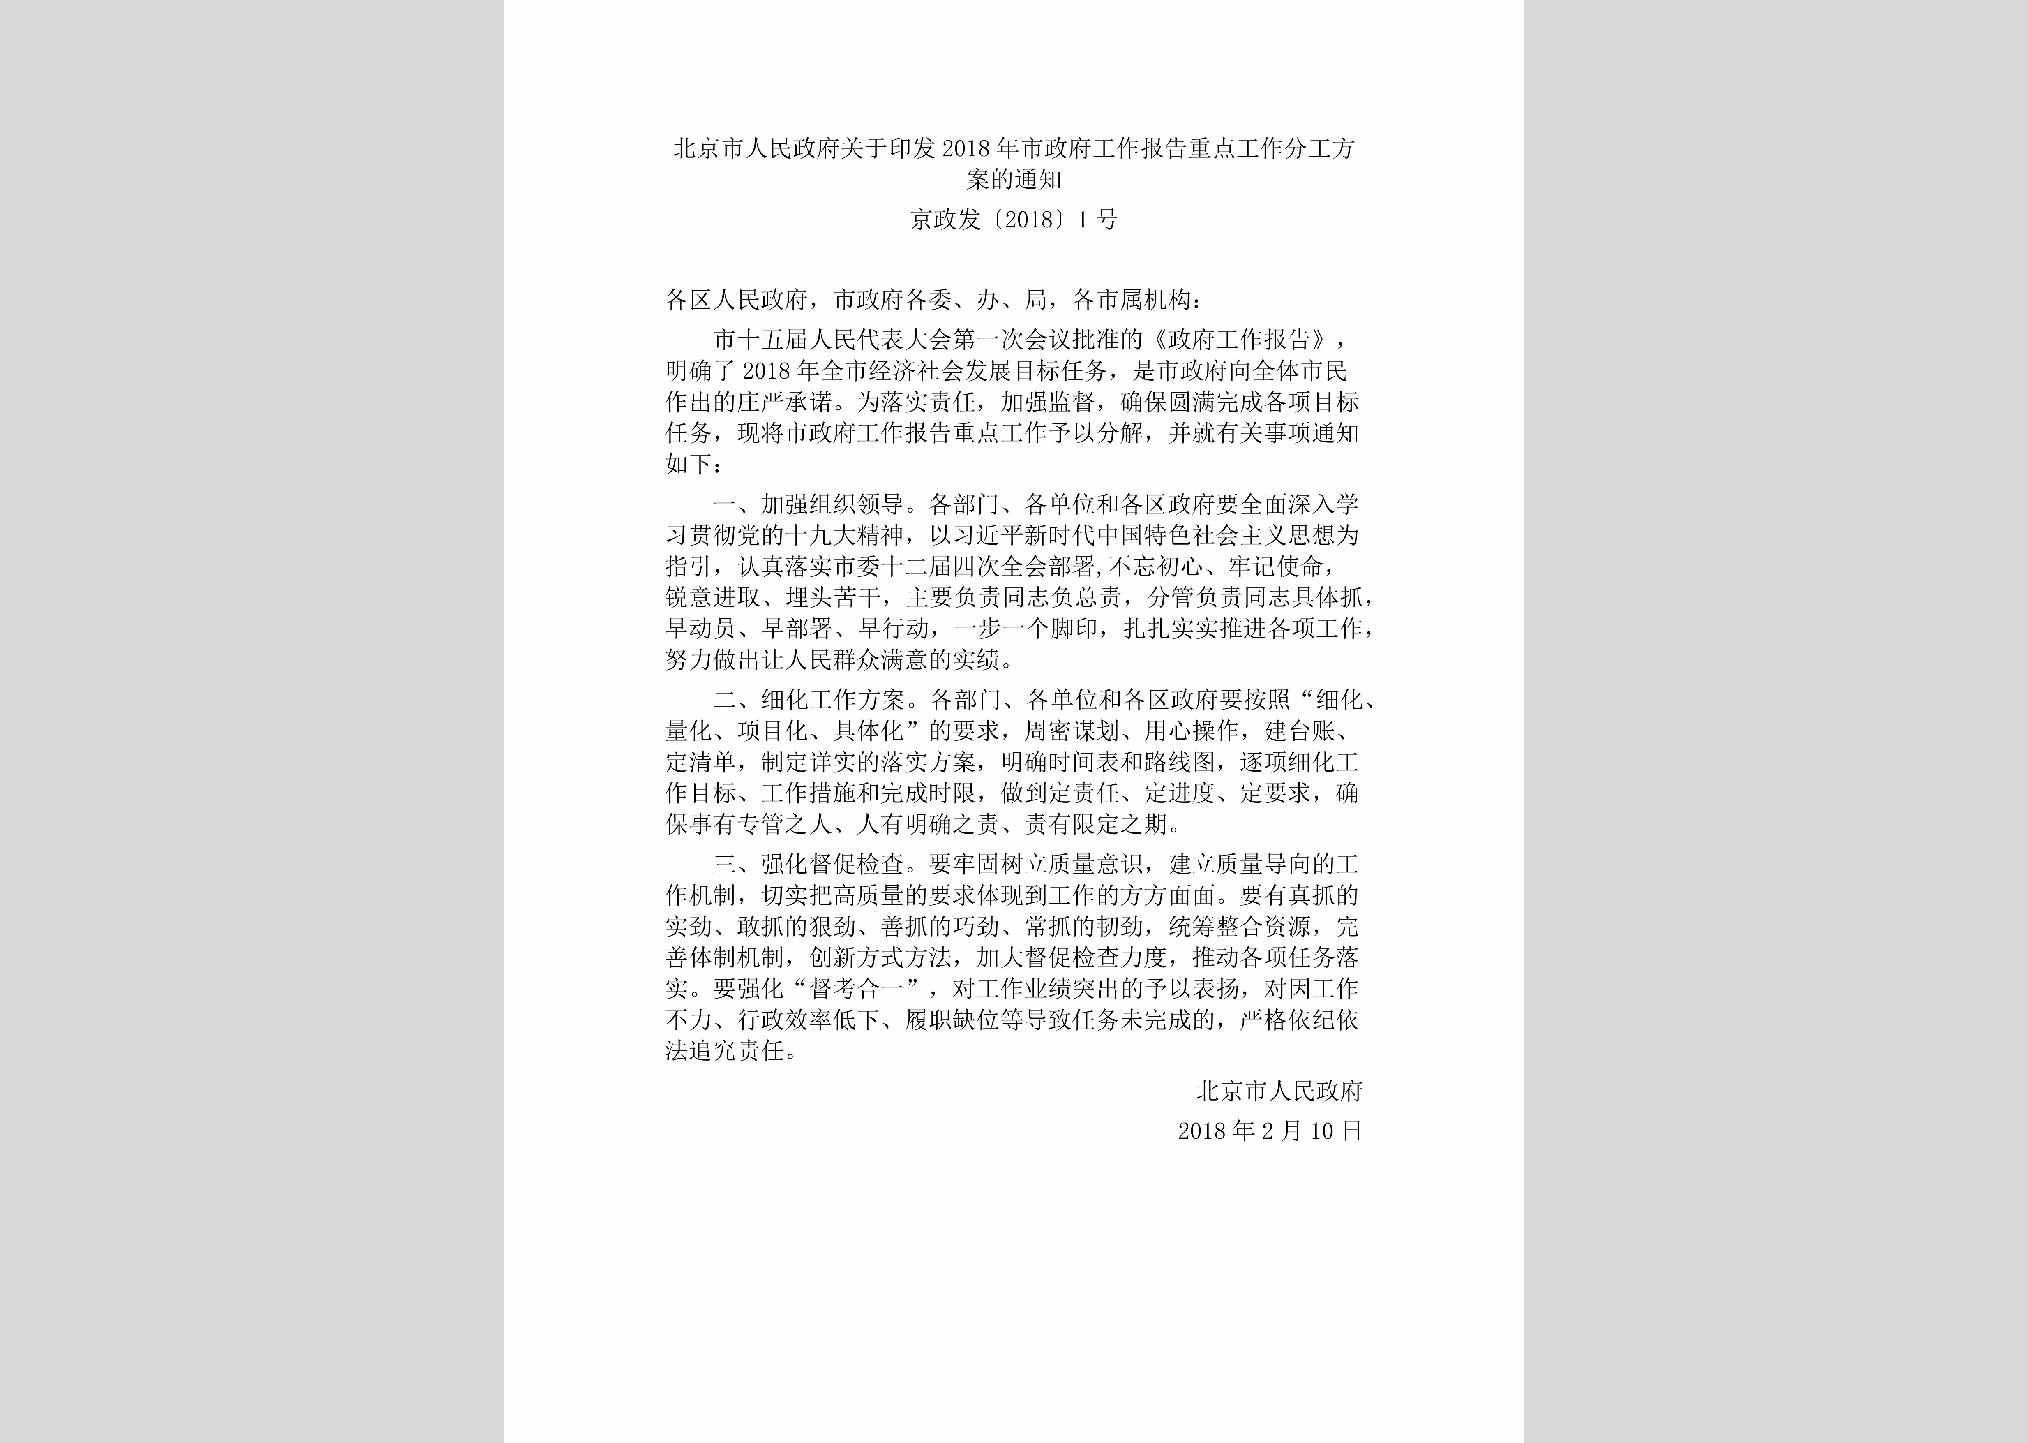 京政发[2018]1号：北京市人民政府关于印发2018年市政府工作报告重点工作分工方案的通知